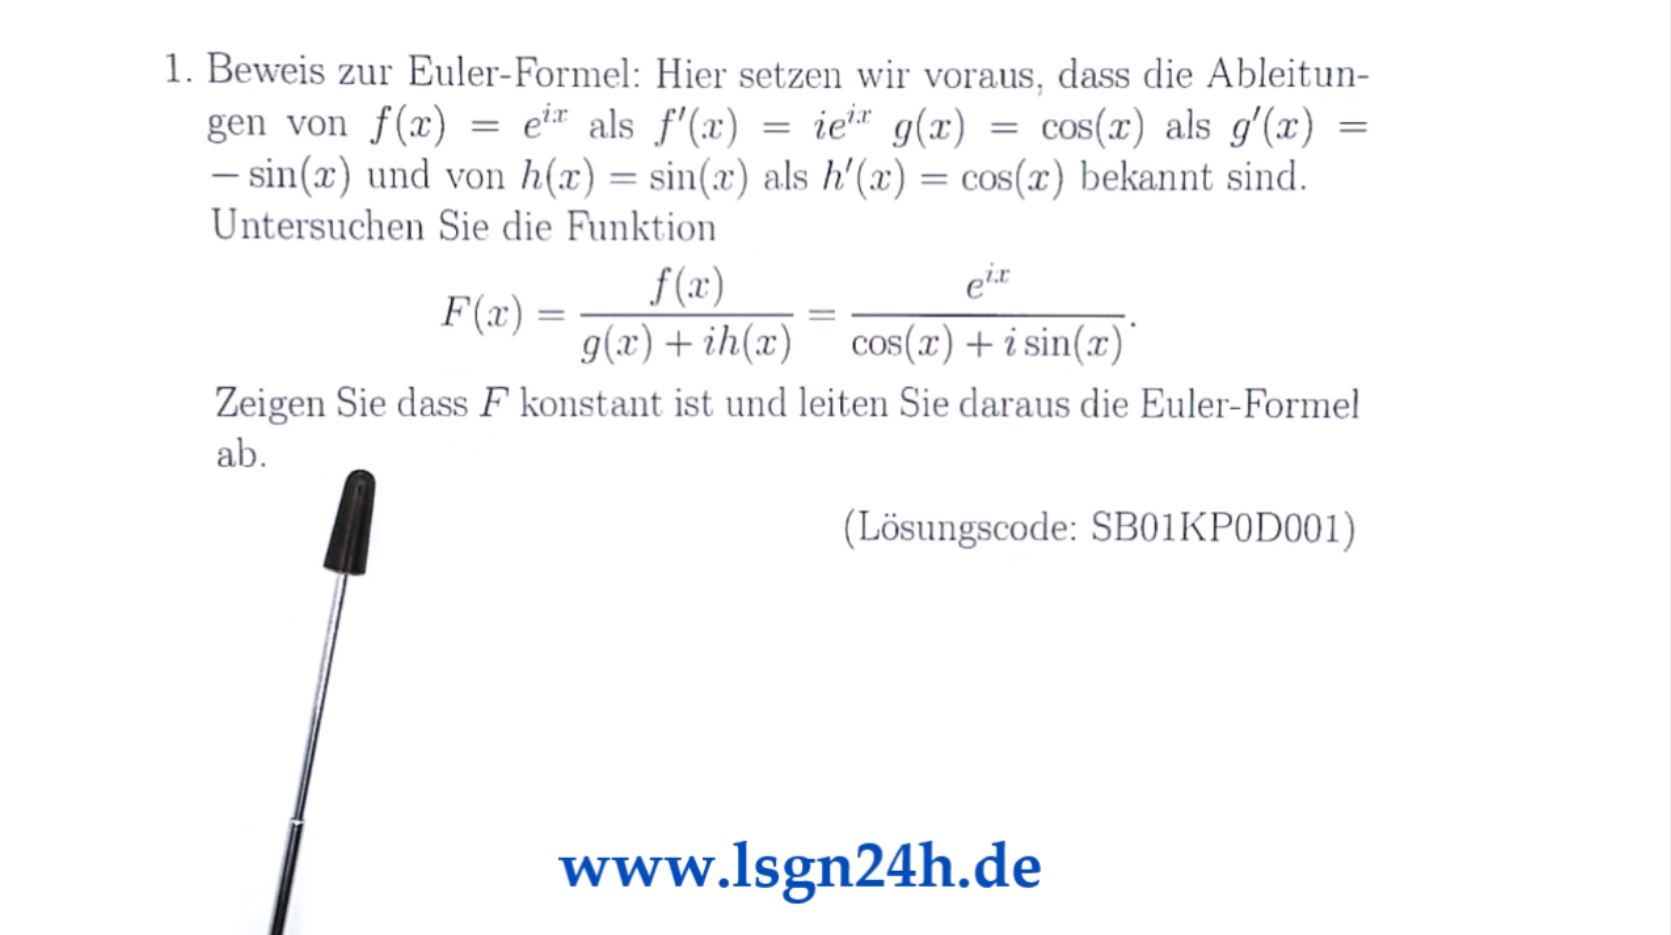 Wie funktioniert dieser Beweis der Euler-Formel?